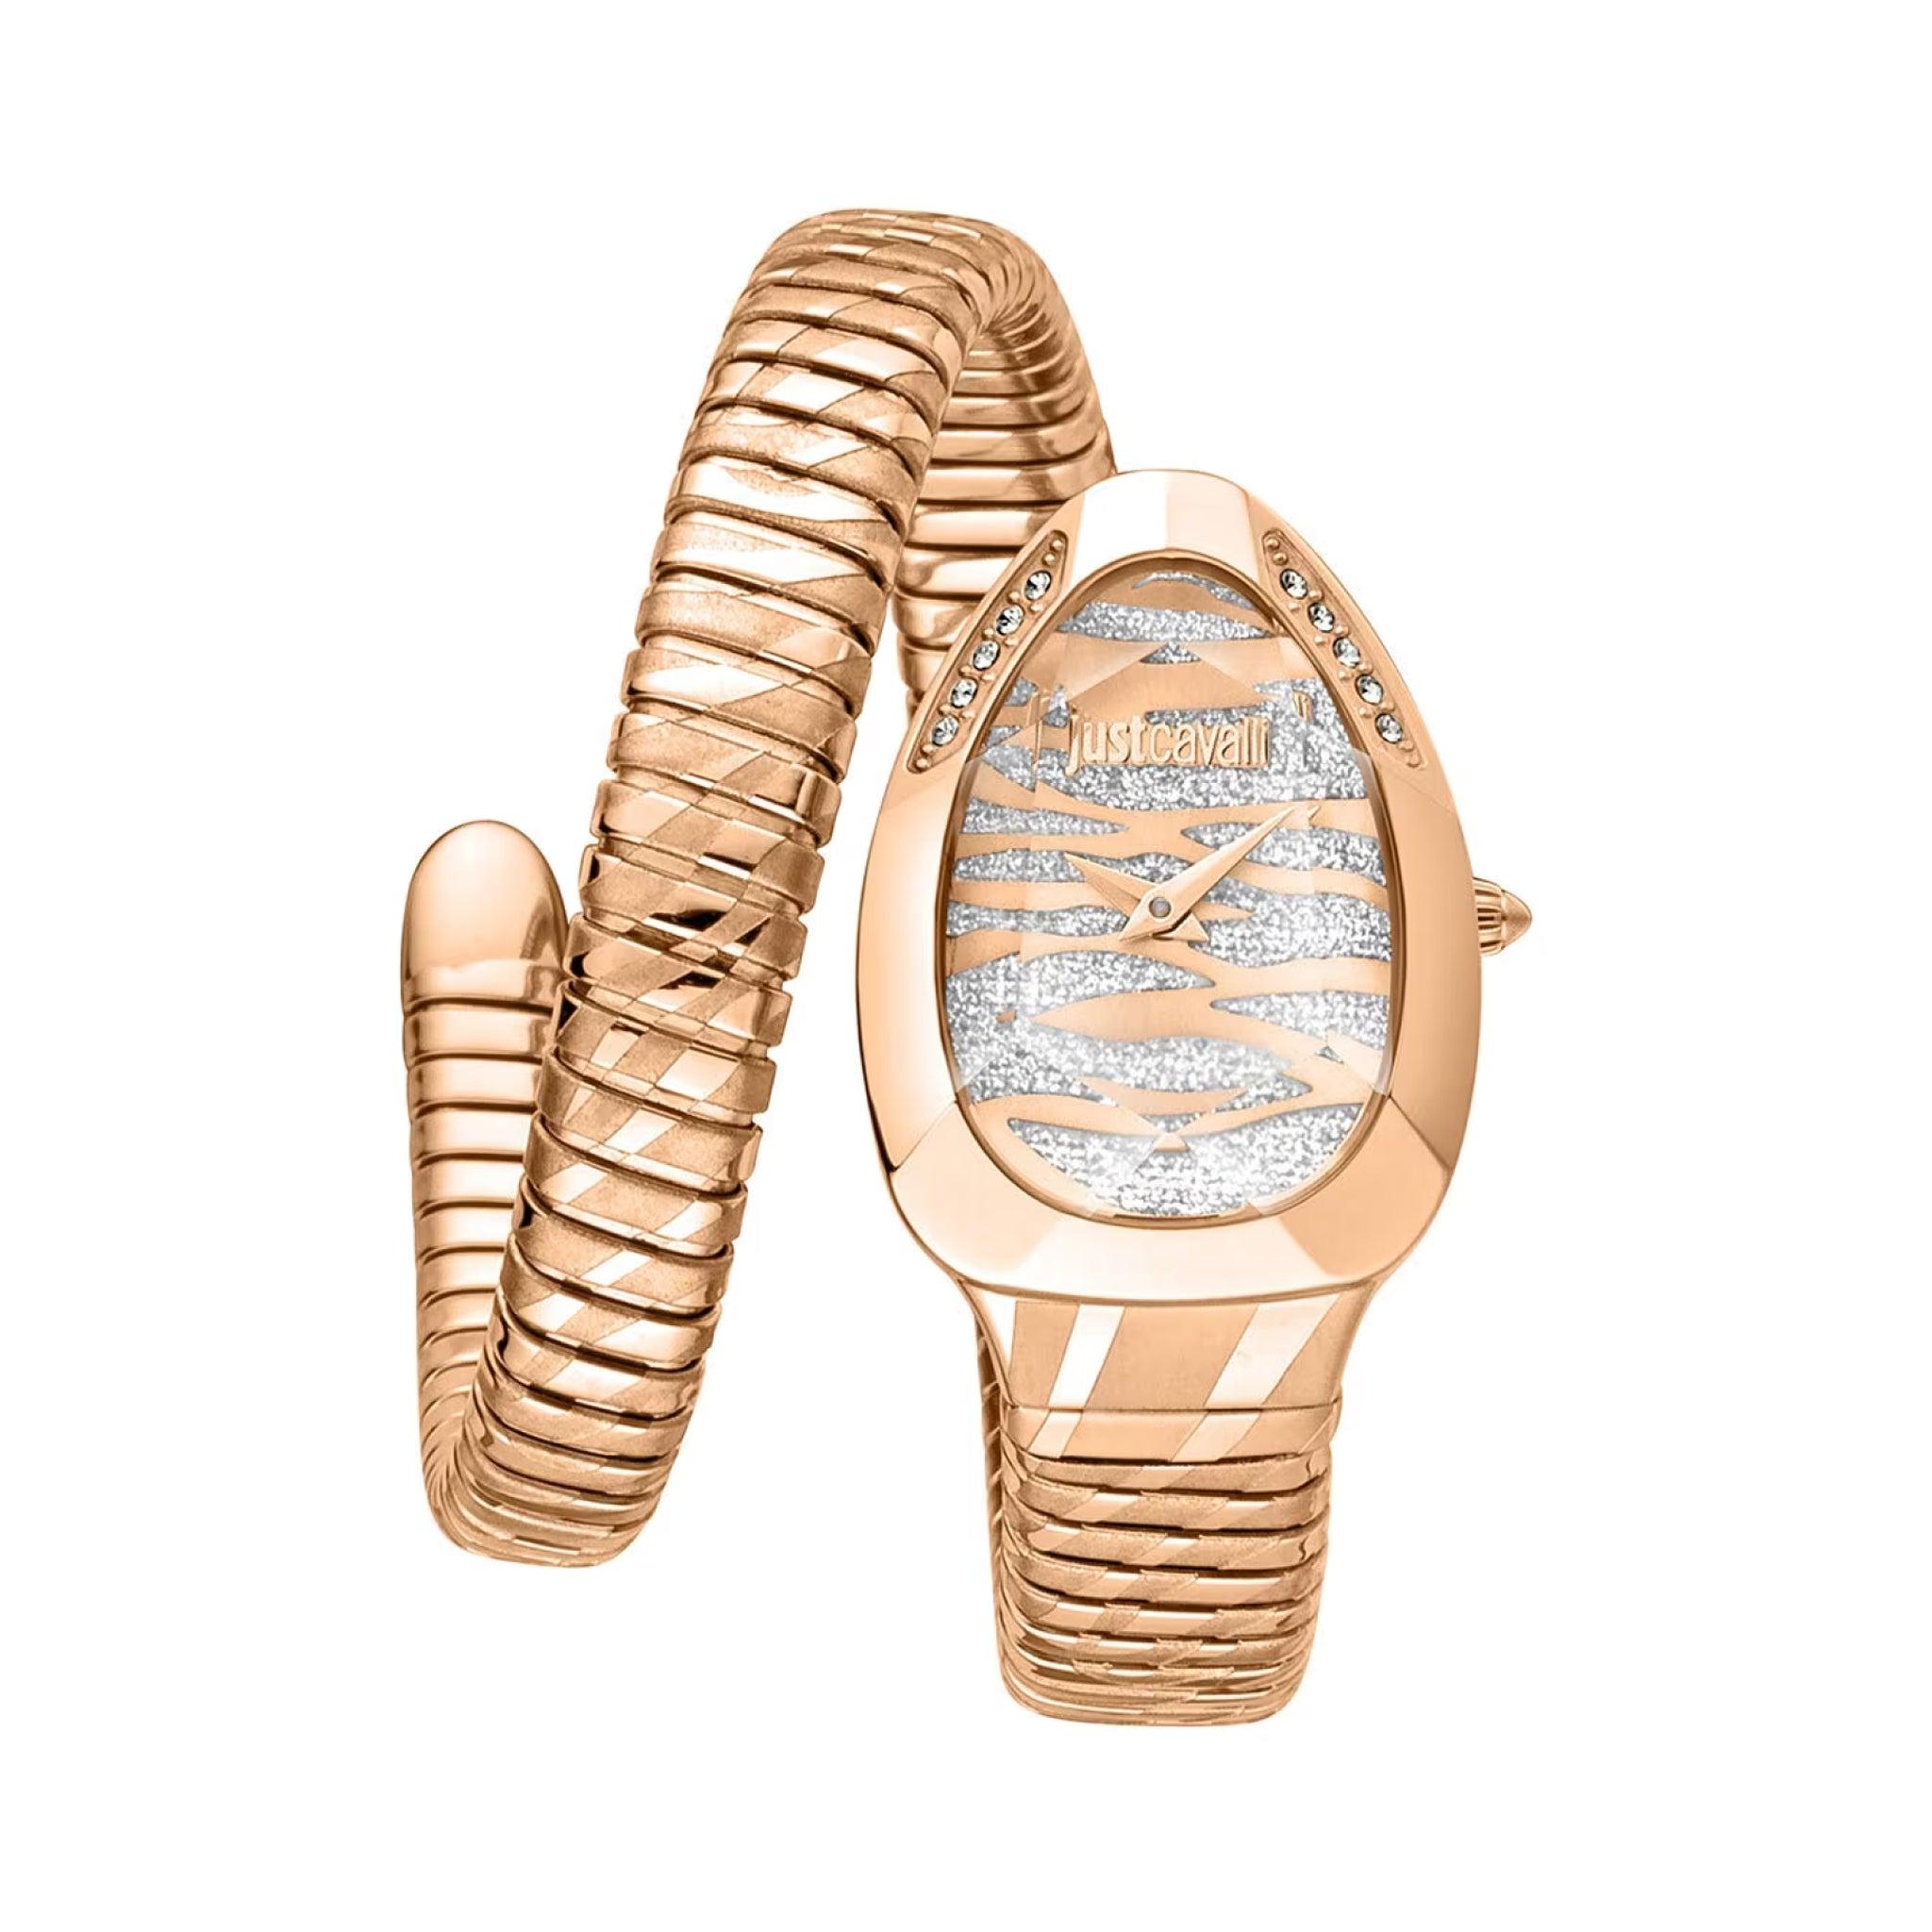 ساعة يد نسائية بشكل ثعبان - ذهبي - بحزام معدني مقاوم للصدأ جست كافالي Just Cavalli Women's Glam Evo 8 Family Watch